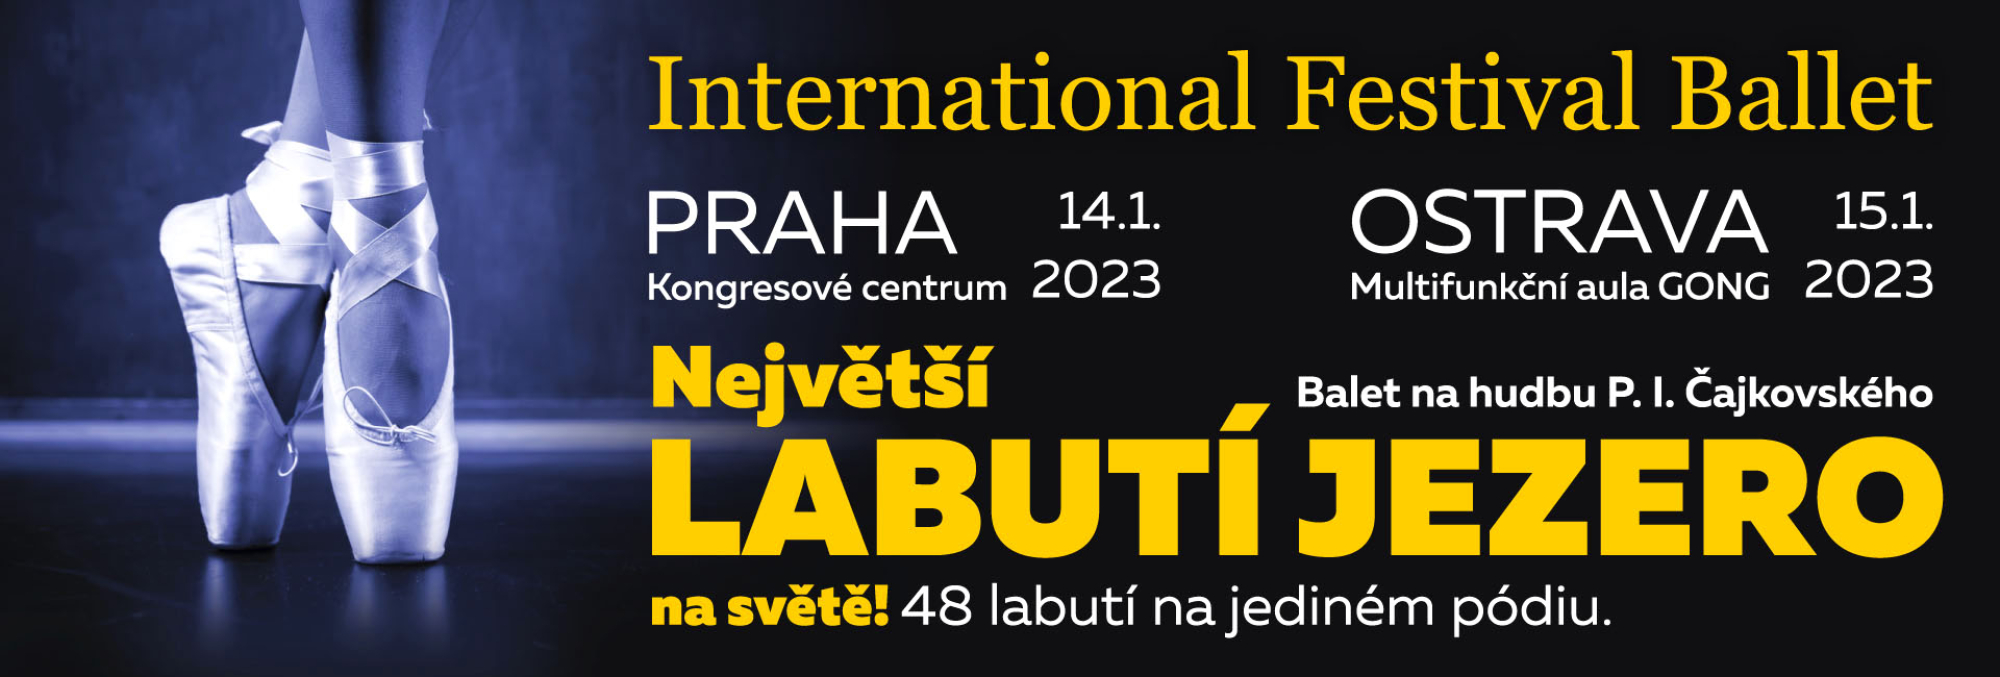 Baletní soubor INTERNATIONAL FESTIVAL BALLET uvádí největší "Labutí jezero" na světě  v Praze a Ostravě, v doprovodu orchestru